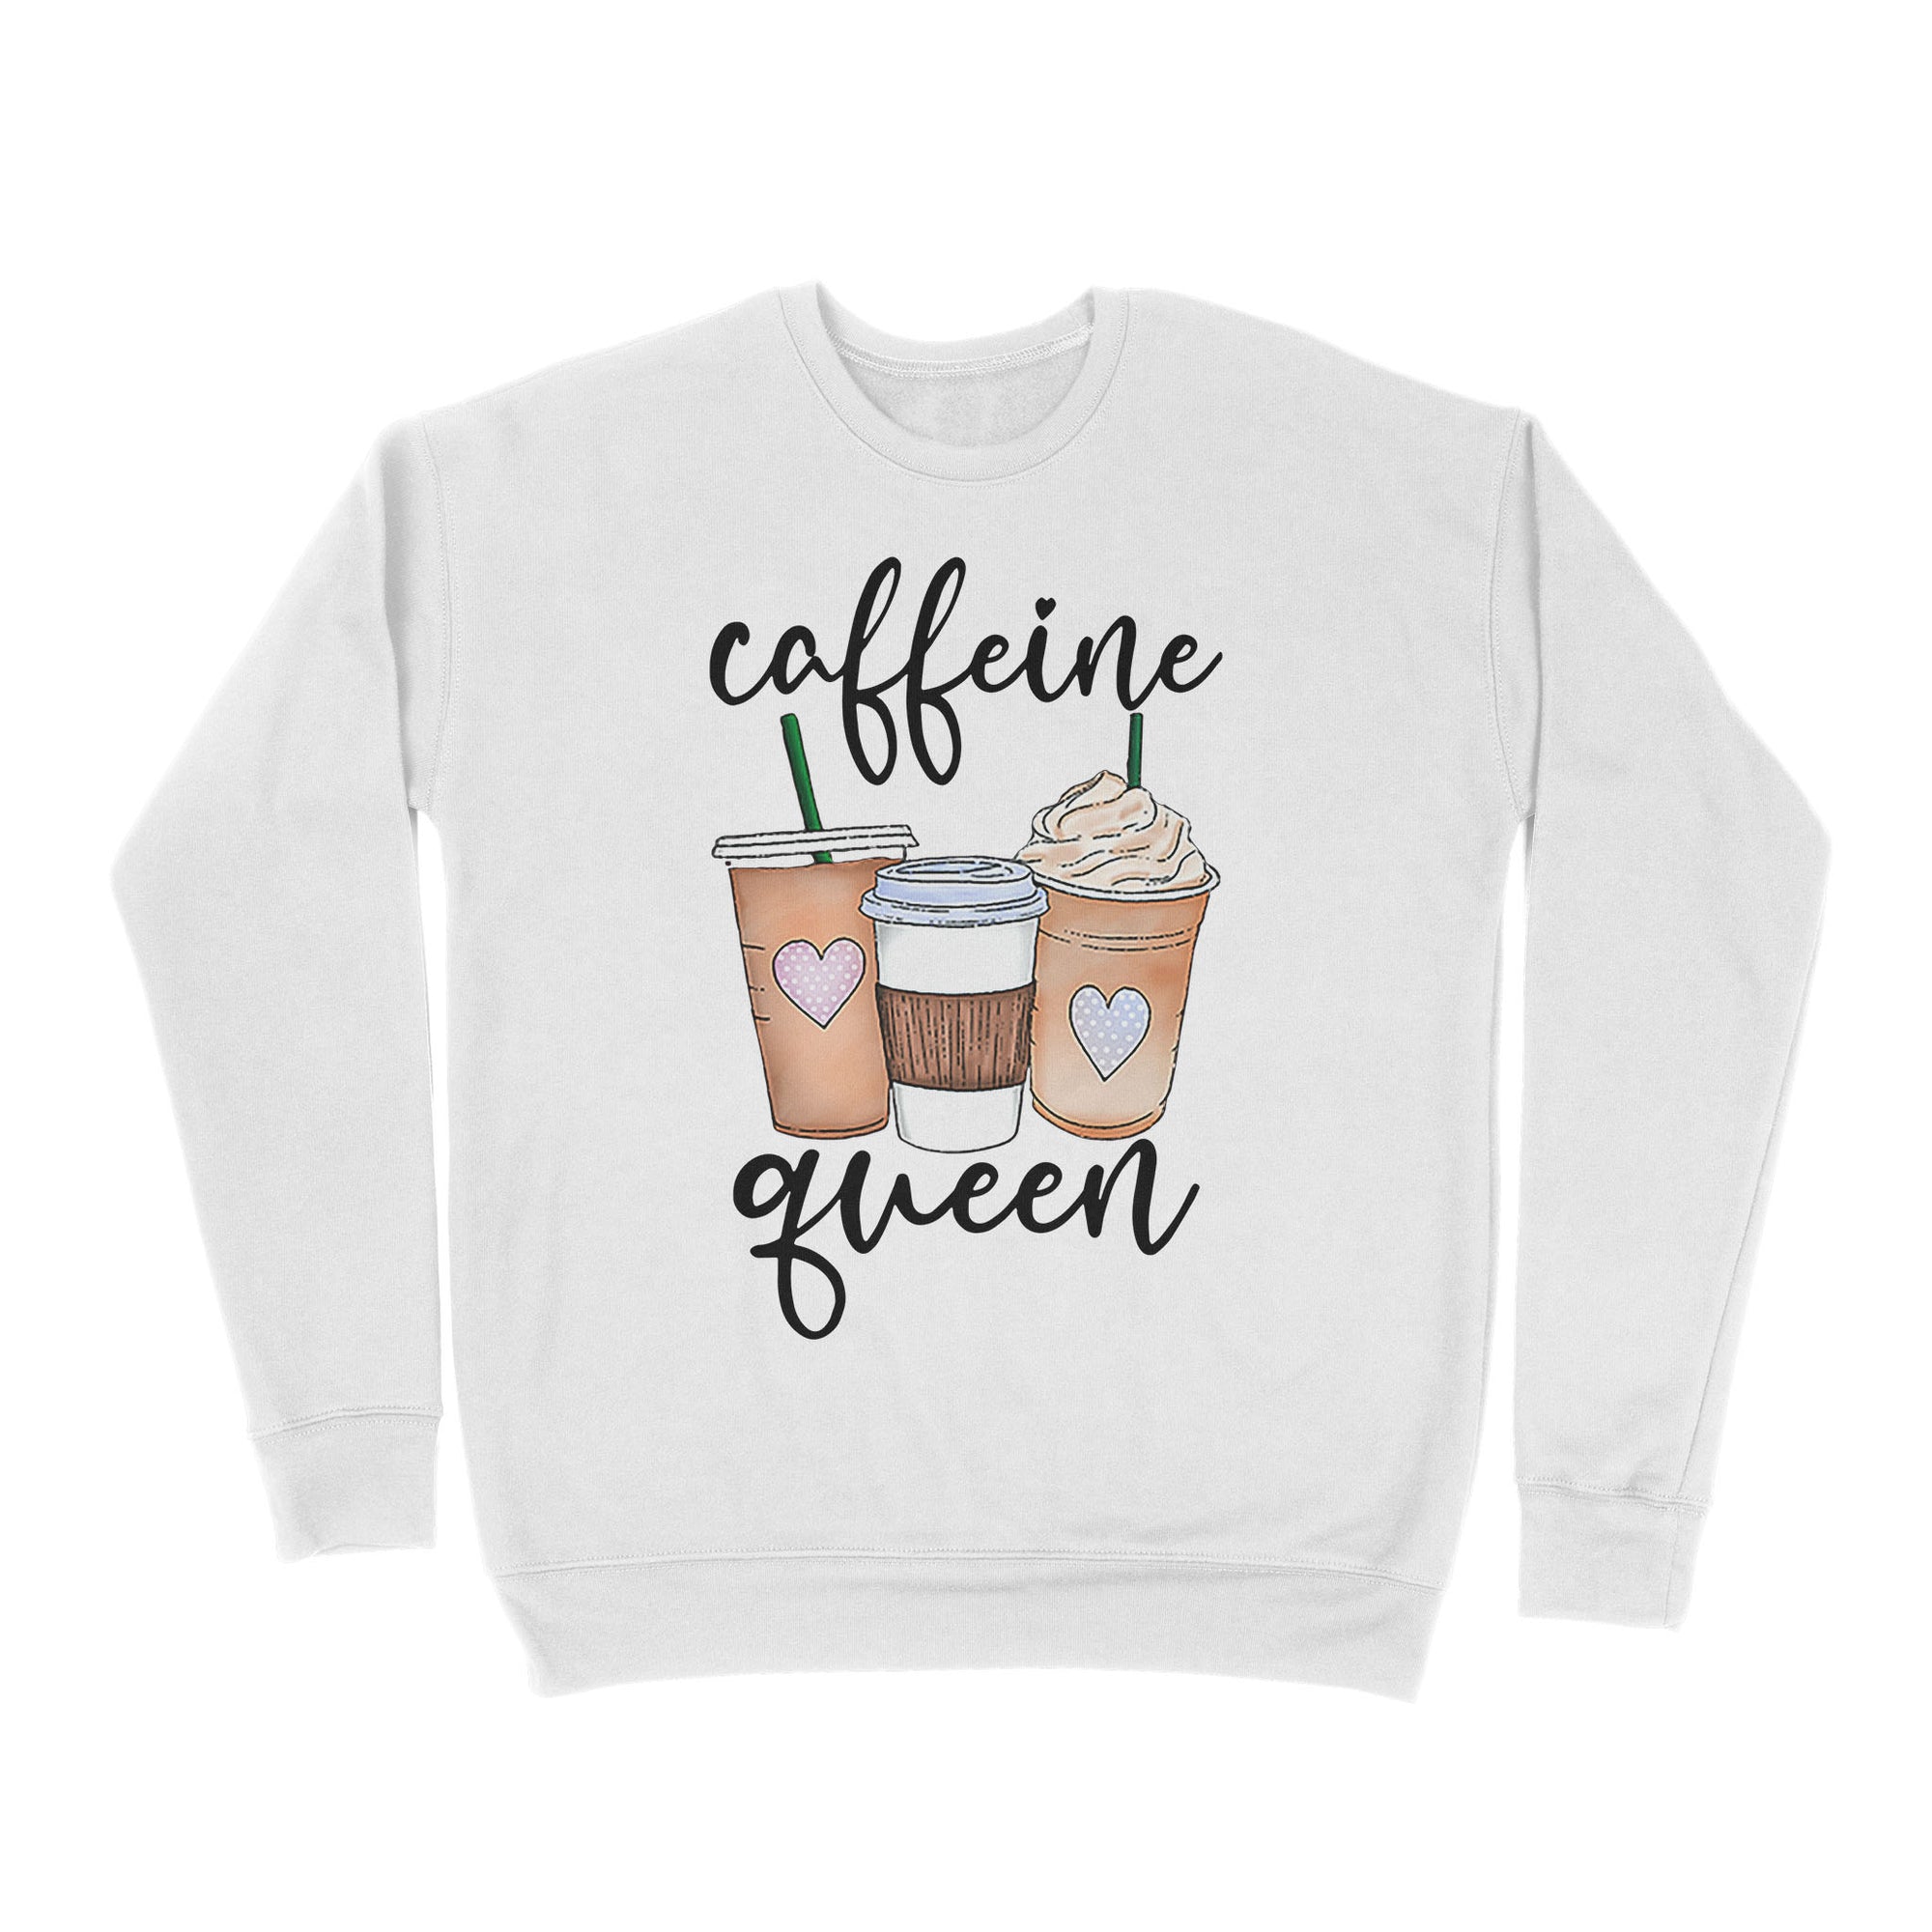 Premium Crew Neck Sweatshirt - Caffeine Queen, Coffee Lover, Coffee Queen